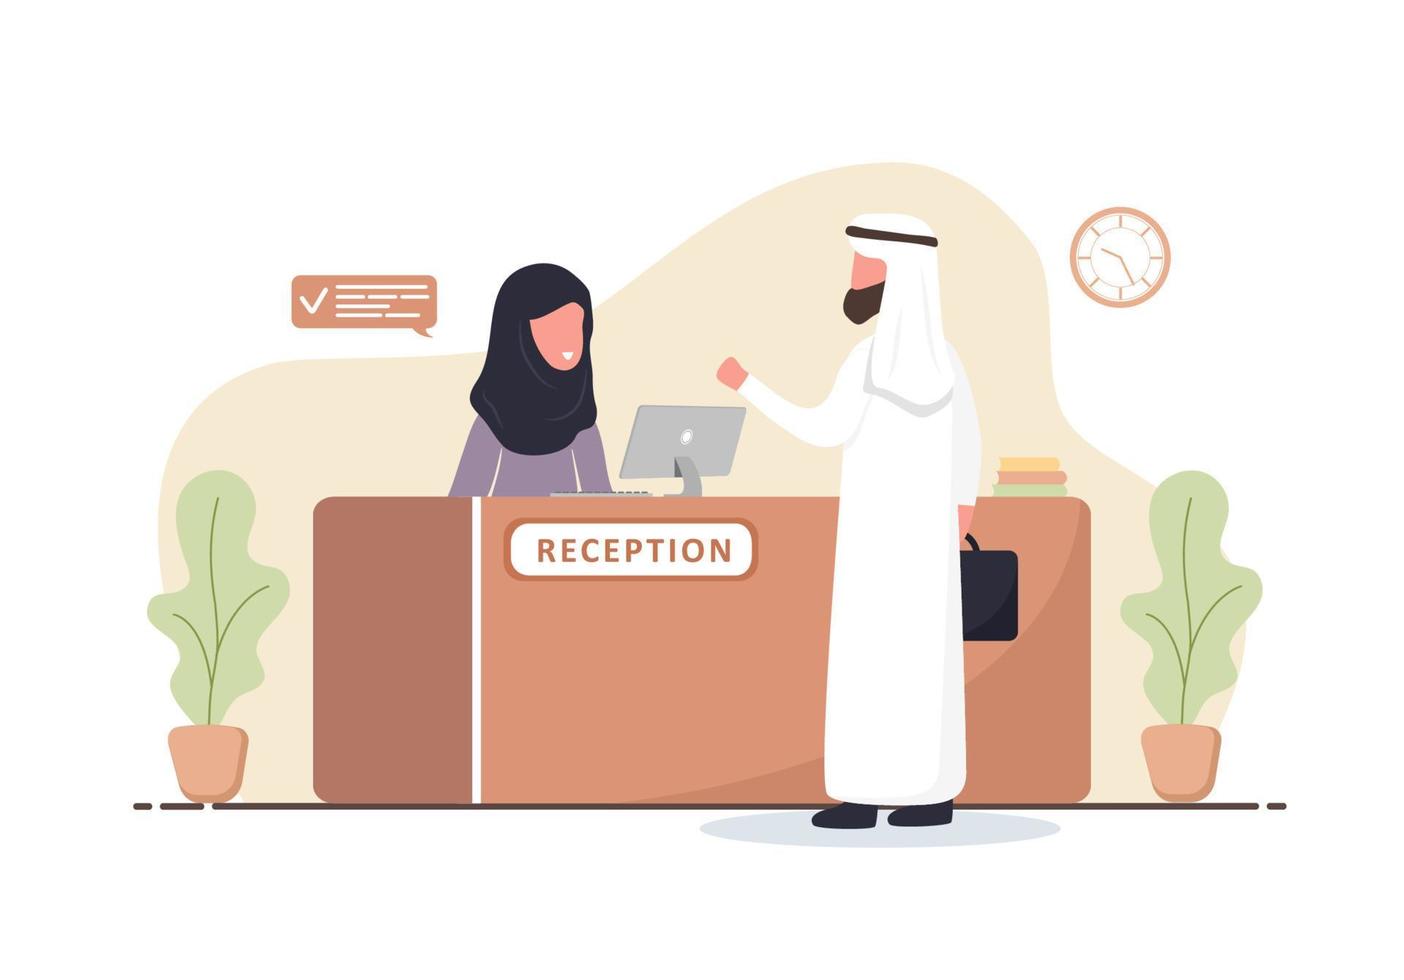 intérieur de la réception. réceptionniste arabe en hijab. homme arabe à la réception. réservation d'hôtel, clinique, enregistrement à l'aéroport, concept de réception bancaire ou de bureau. illustration de vecteur plat de dessin animé.